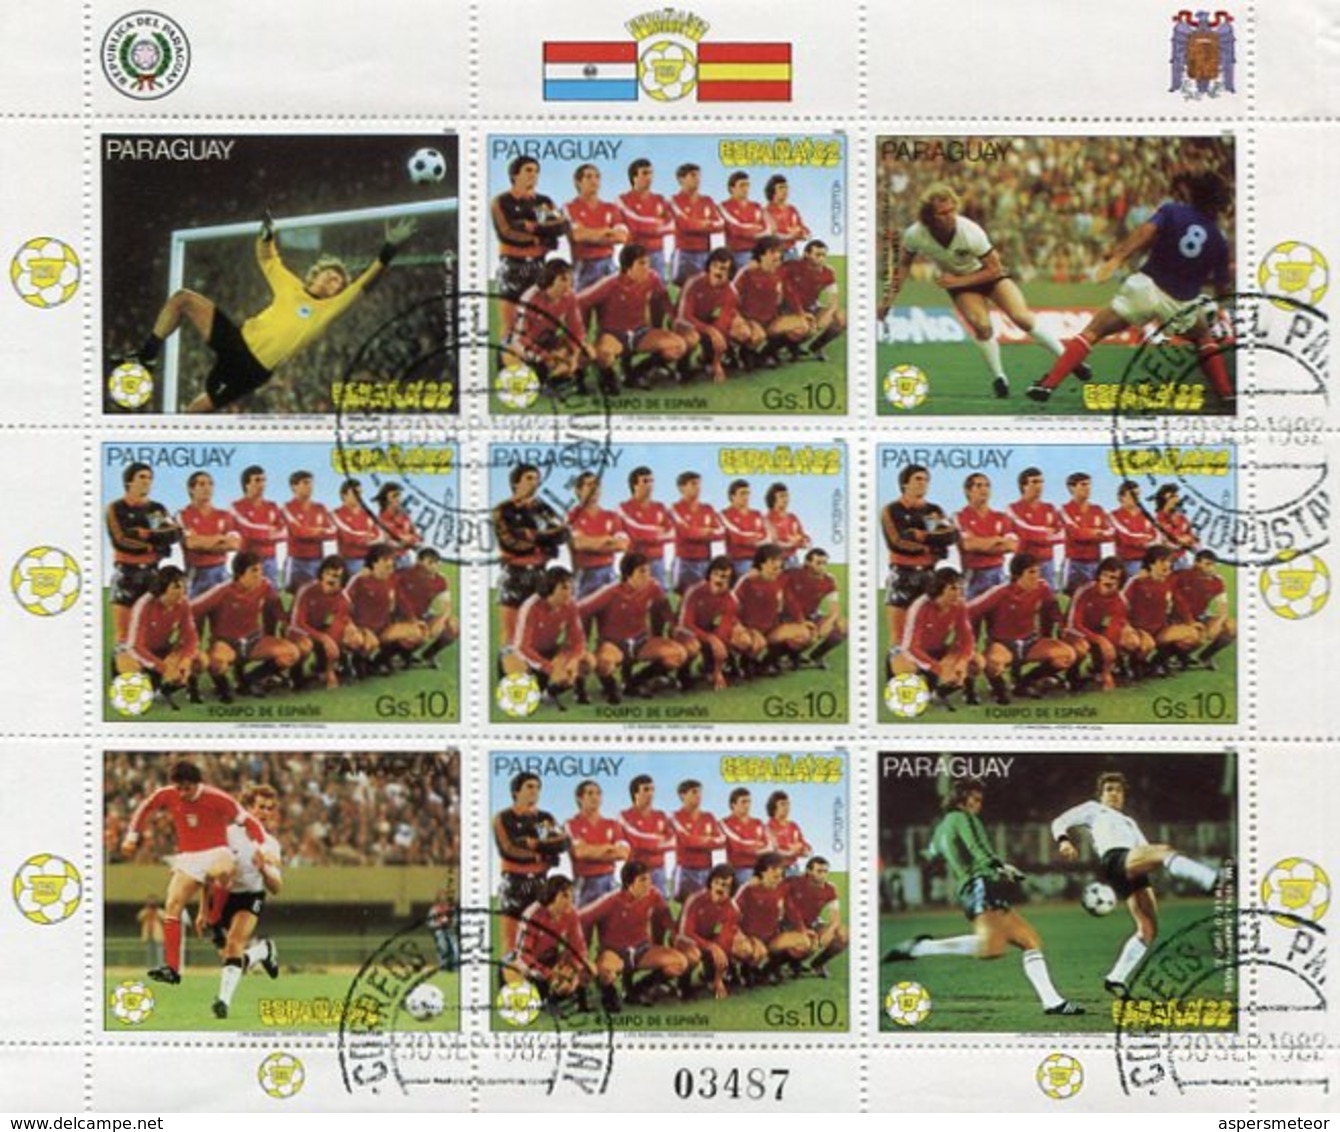 FIFA WORLD CUP SPAIN / COPA MUNDIAL DE FUTBOL ESPAÑA '82 - PARAGUAY 1982 FEUILLET AEREO N° 904 OBLITERE - LILHU - 1982 – Spain